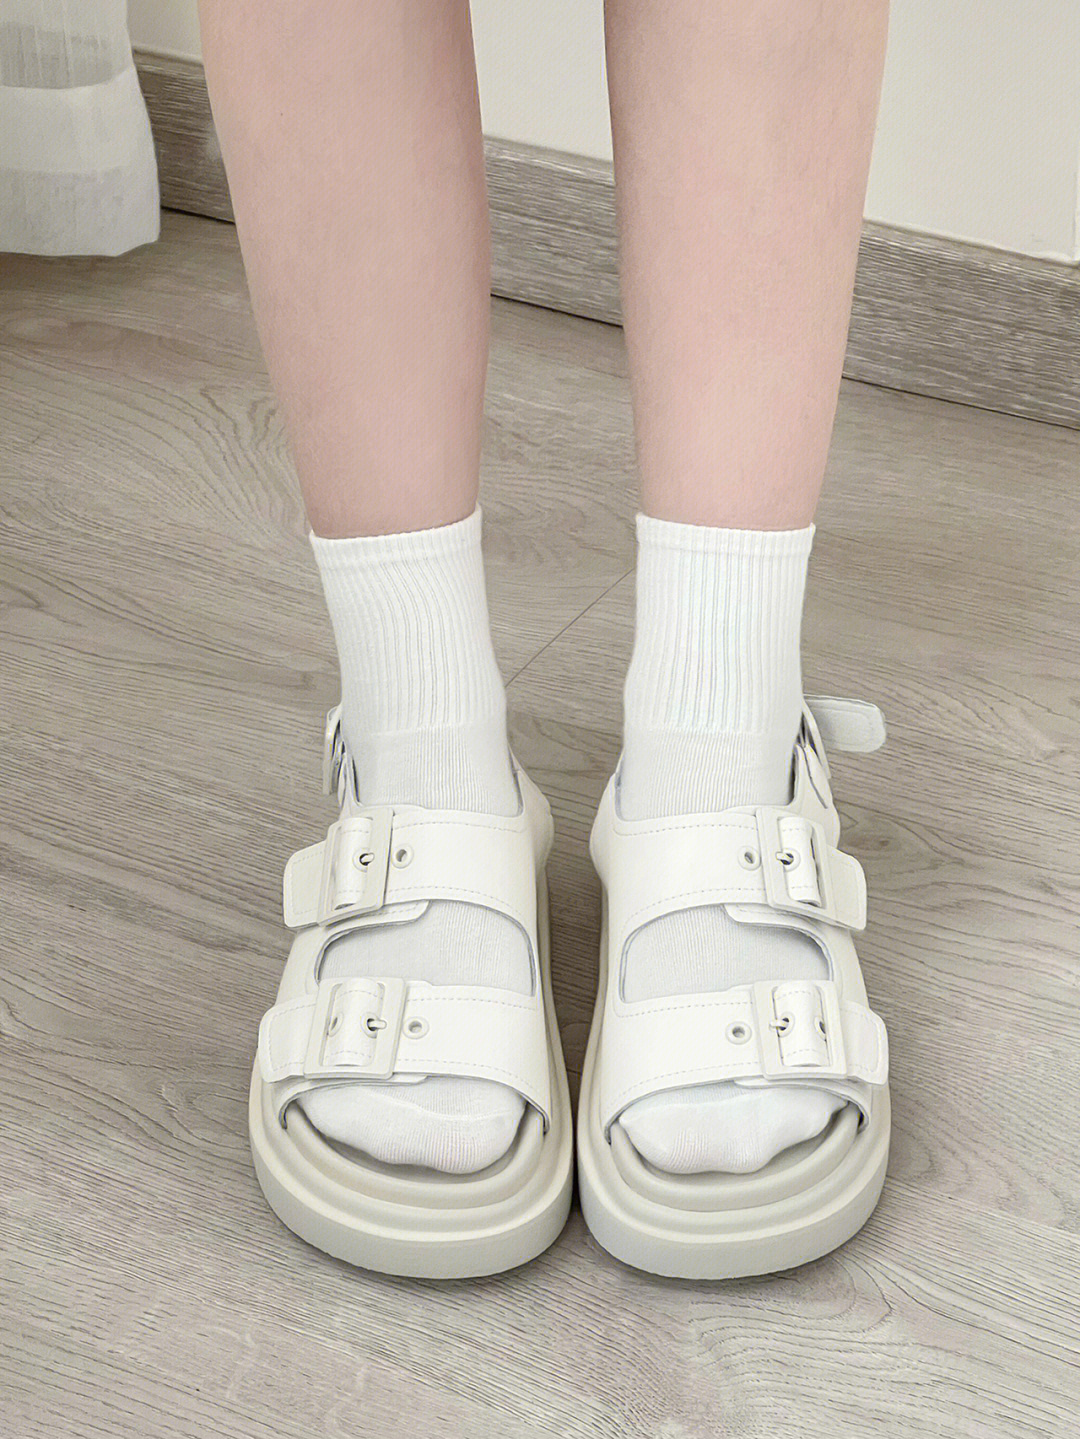 小女孩的凉鞋白袜图片